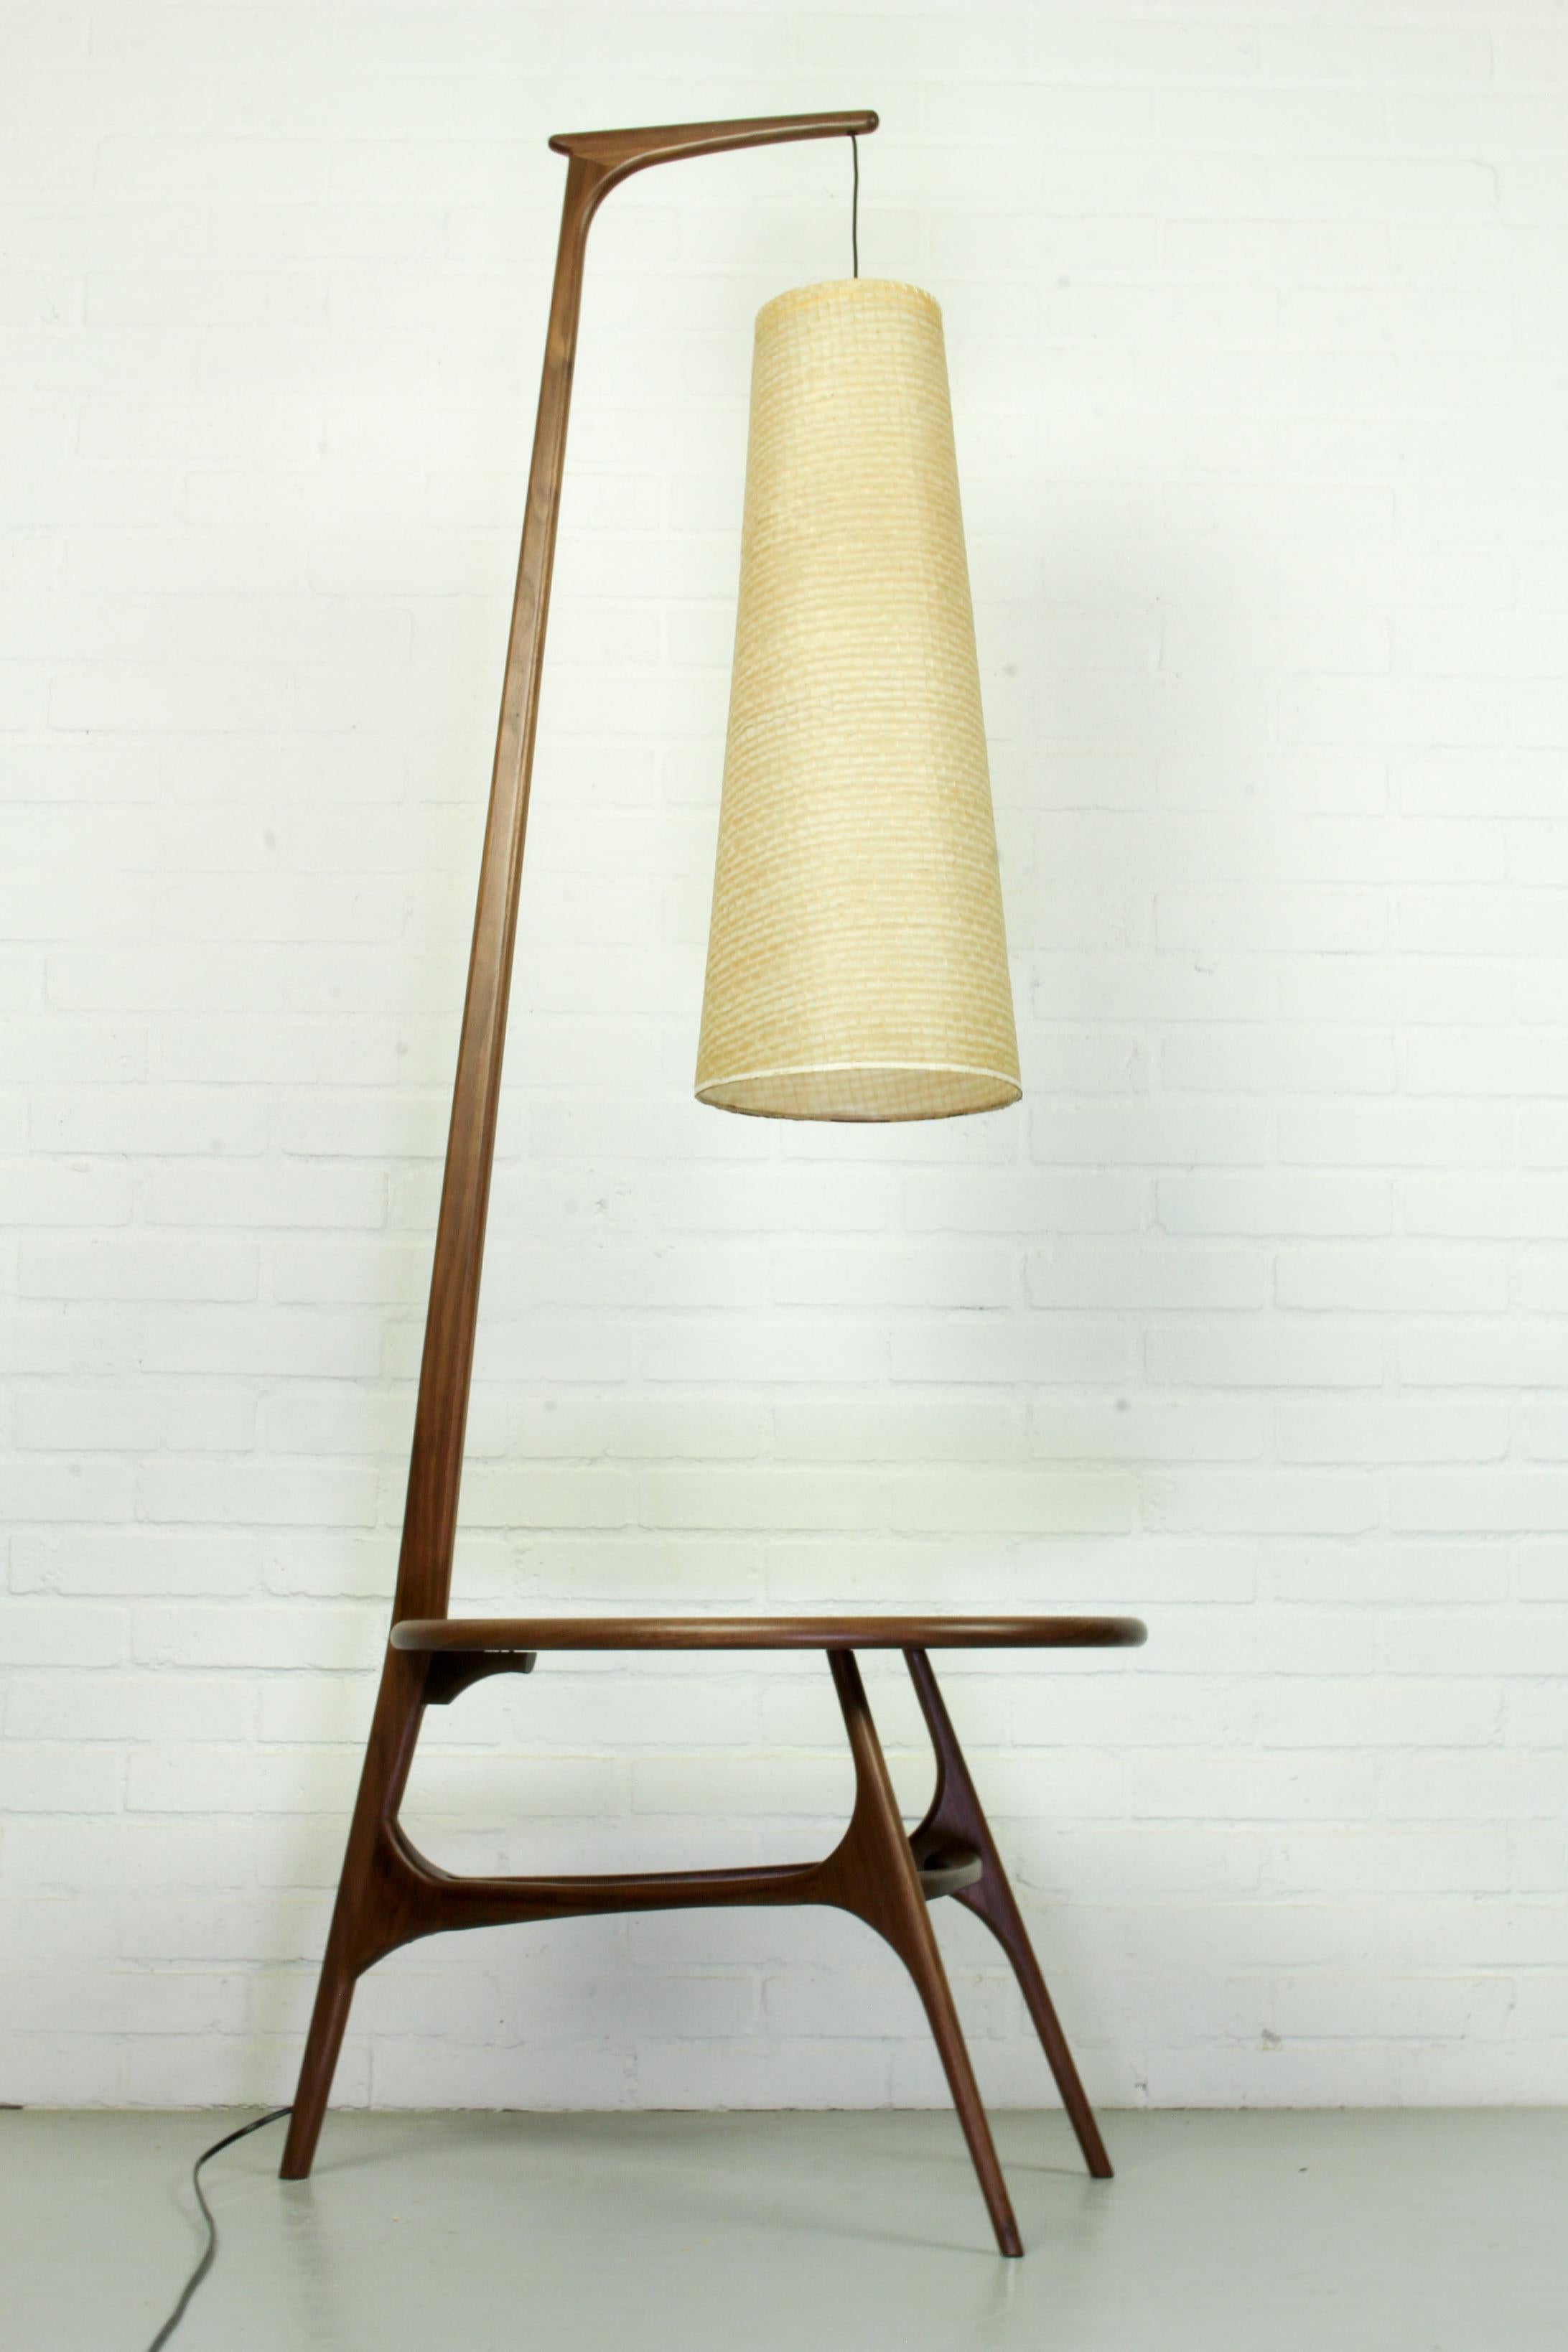 Cet abat-jour Rispal du milieu du siècle dernier a une belle forme. La lampe est complétée par une nouvelle table et un pied en écrou américain de forme organique afin qu'elle puisse être utilisée comme lampadaire. L'abat-jour lui-même est en bon